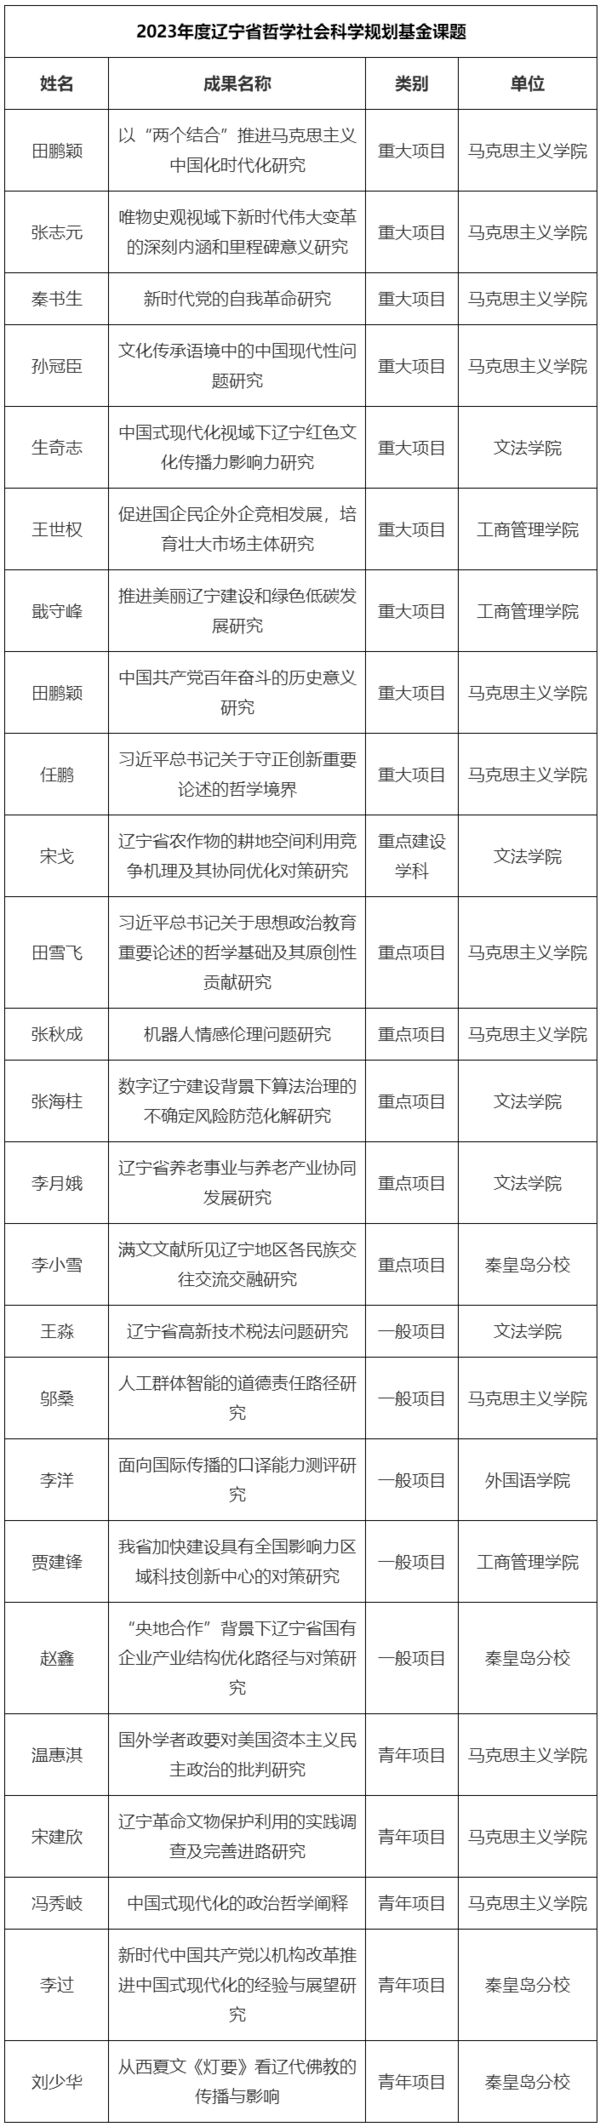 东北大学获批2023年度辽宁省哲学社会科学规划基金课题25项